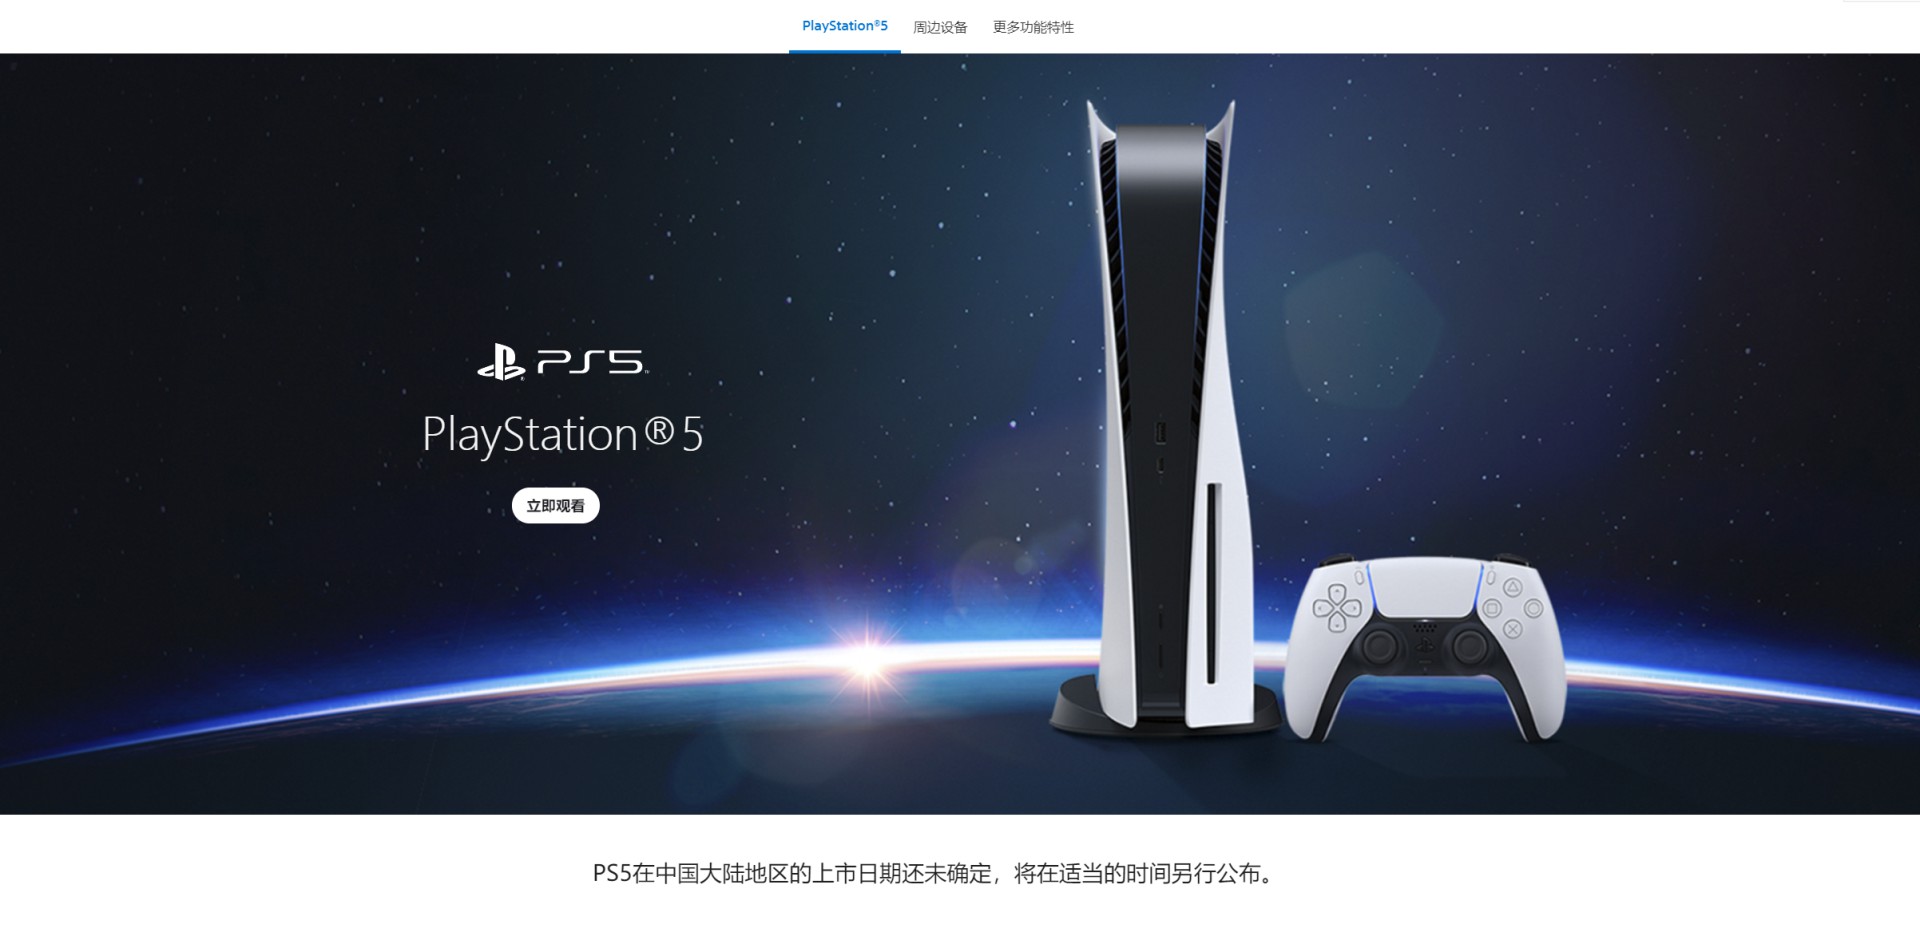 PS中国官网PS5页面更新可查看多种配件信息